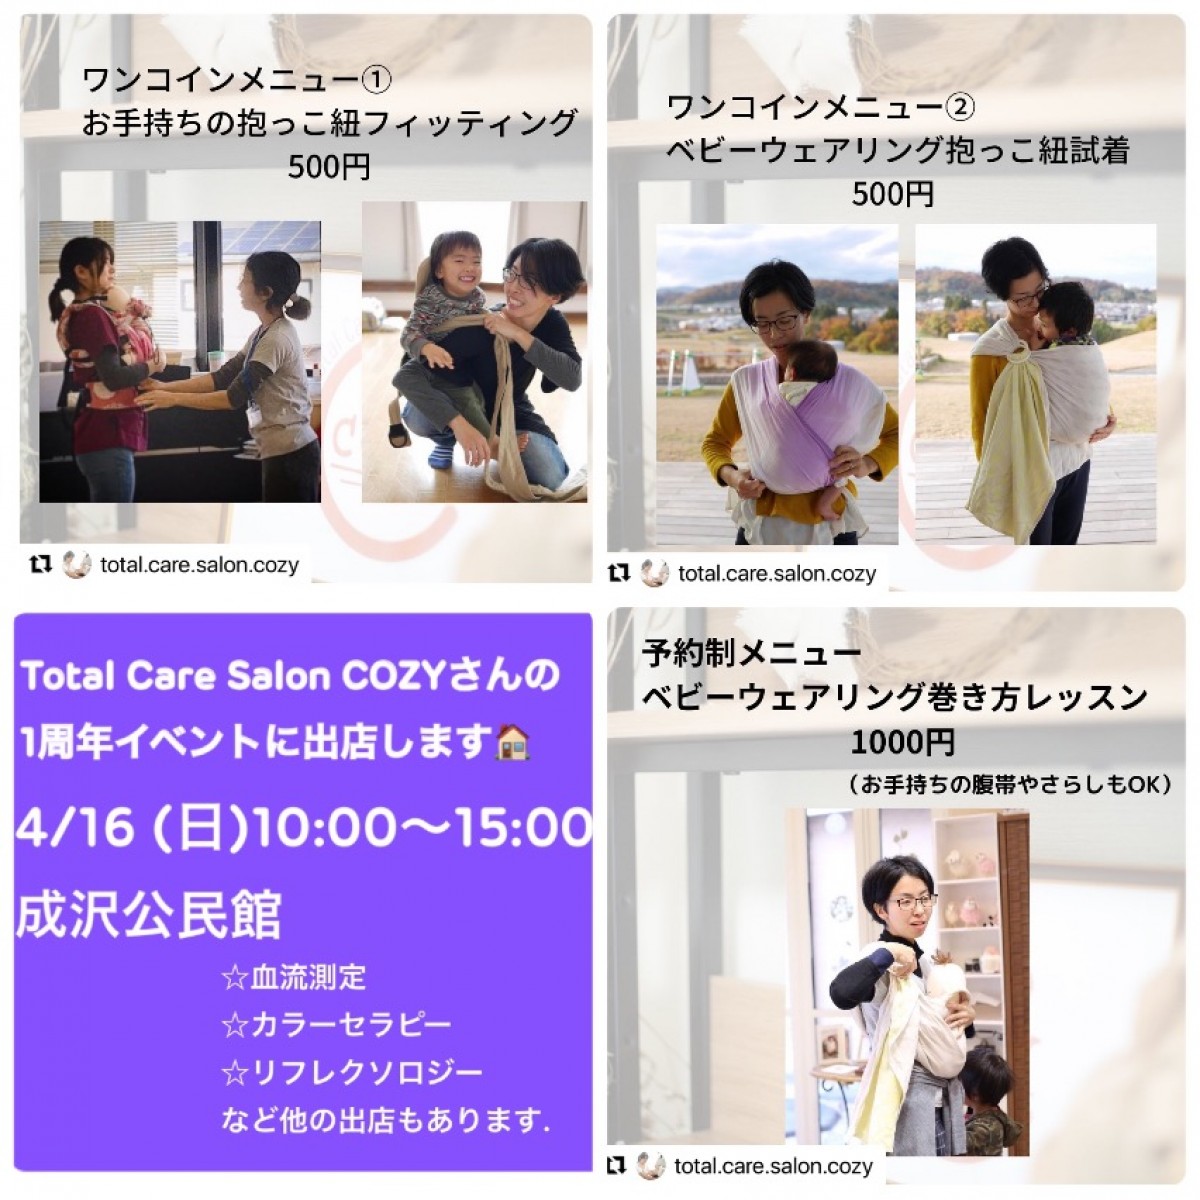 total care salon COZY 1周年記念イベント出店